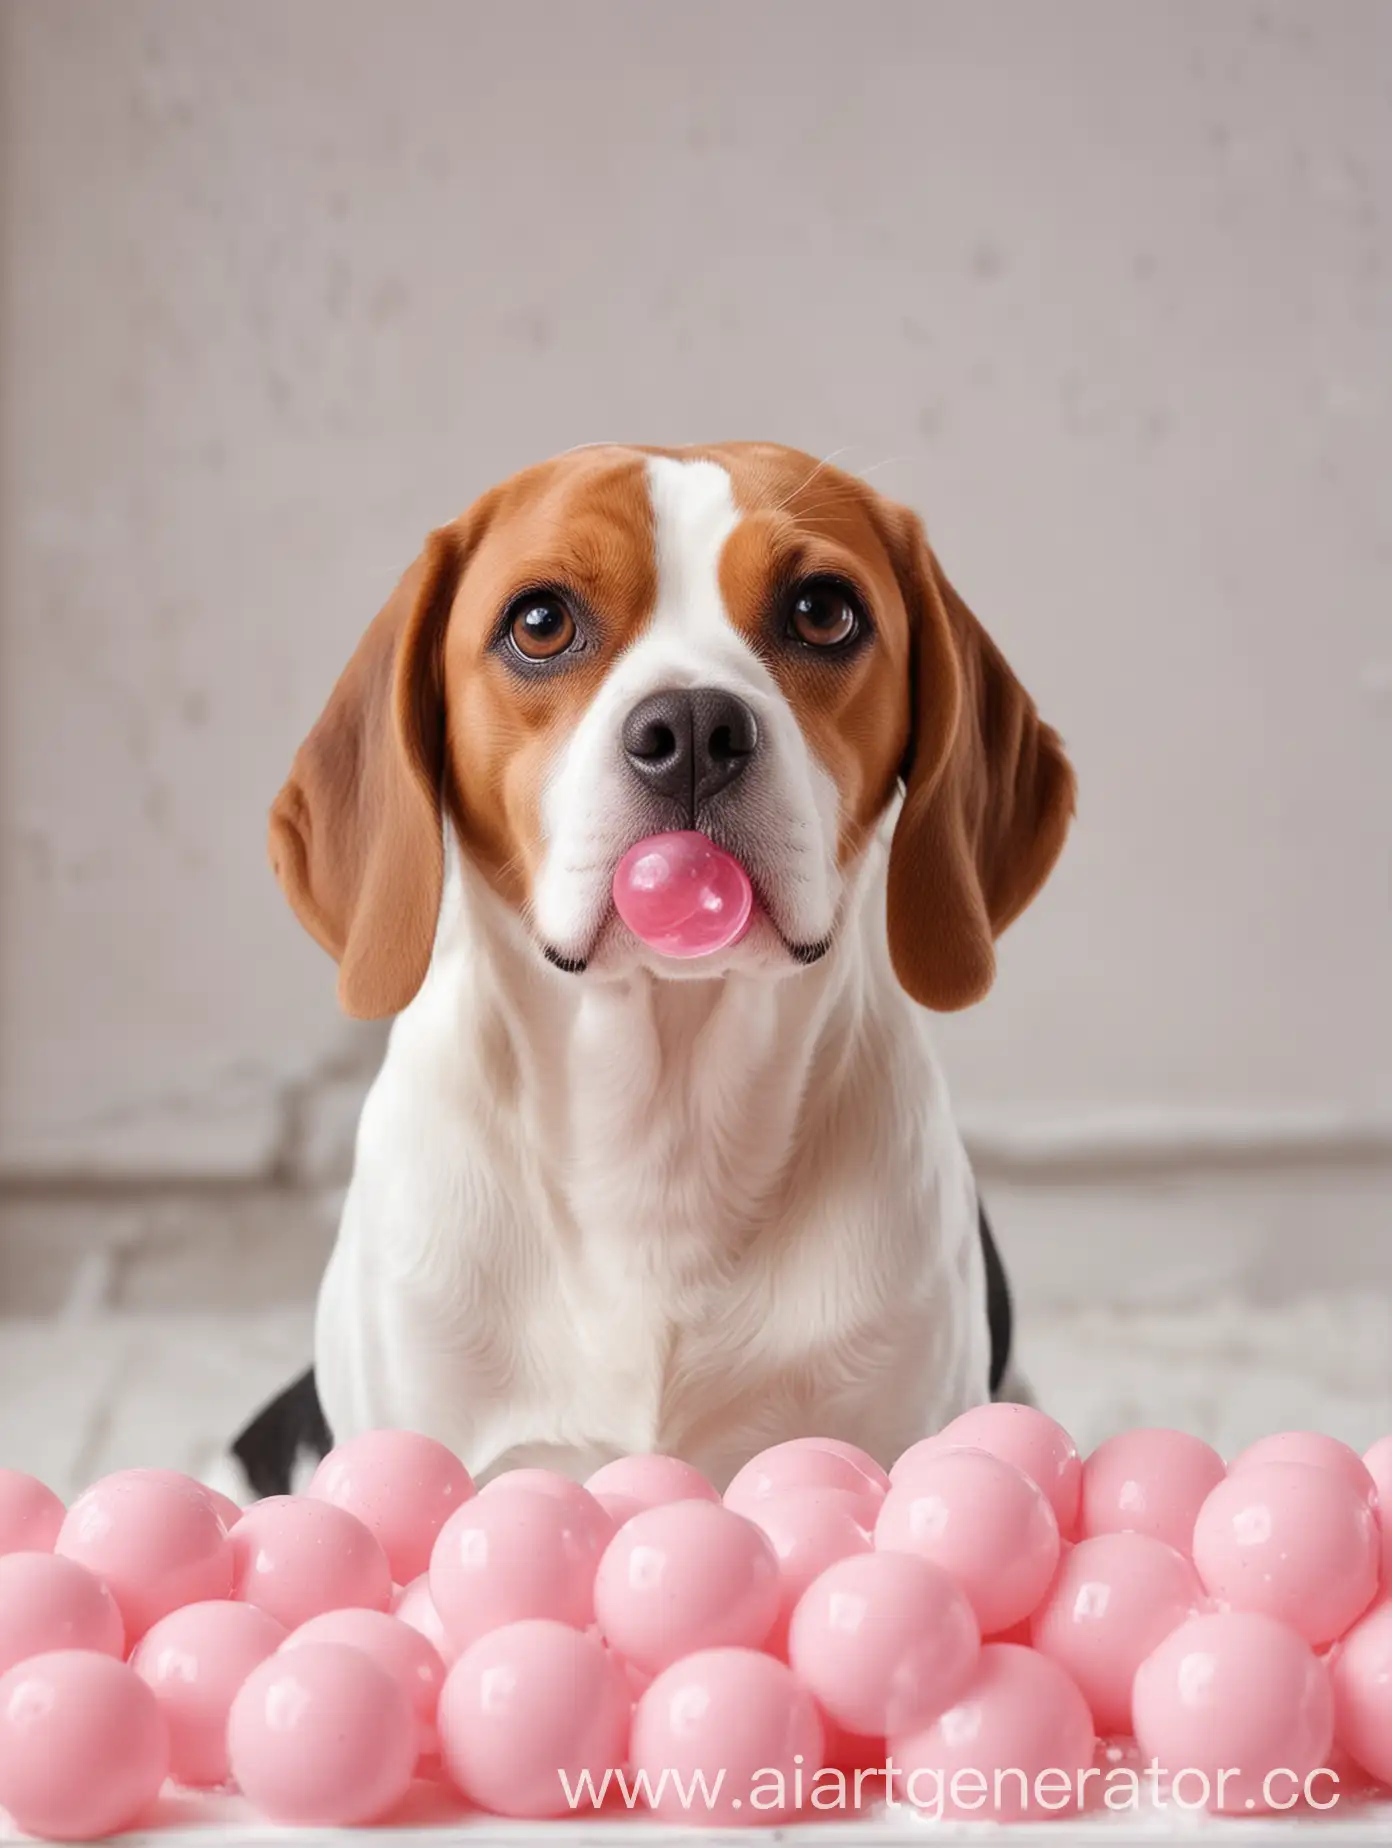 в белой комнате собака породы бигль смотрит в камеру, вокруг неё розовые пузыри из жвачки